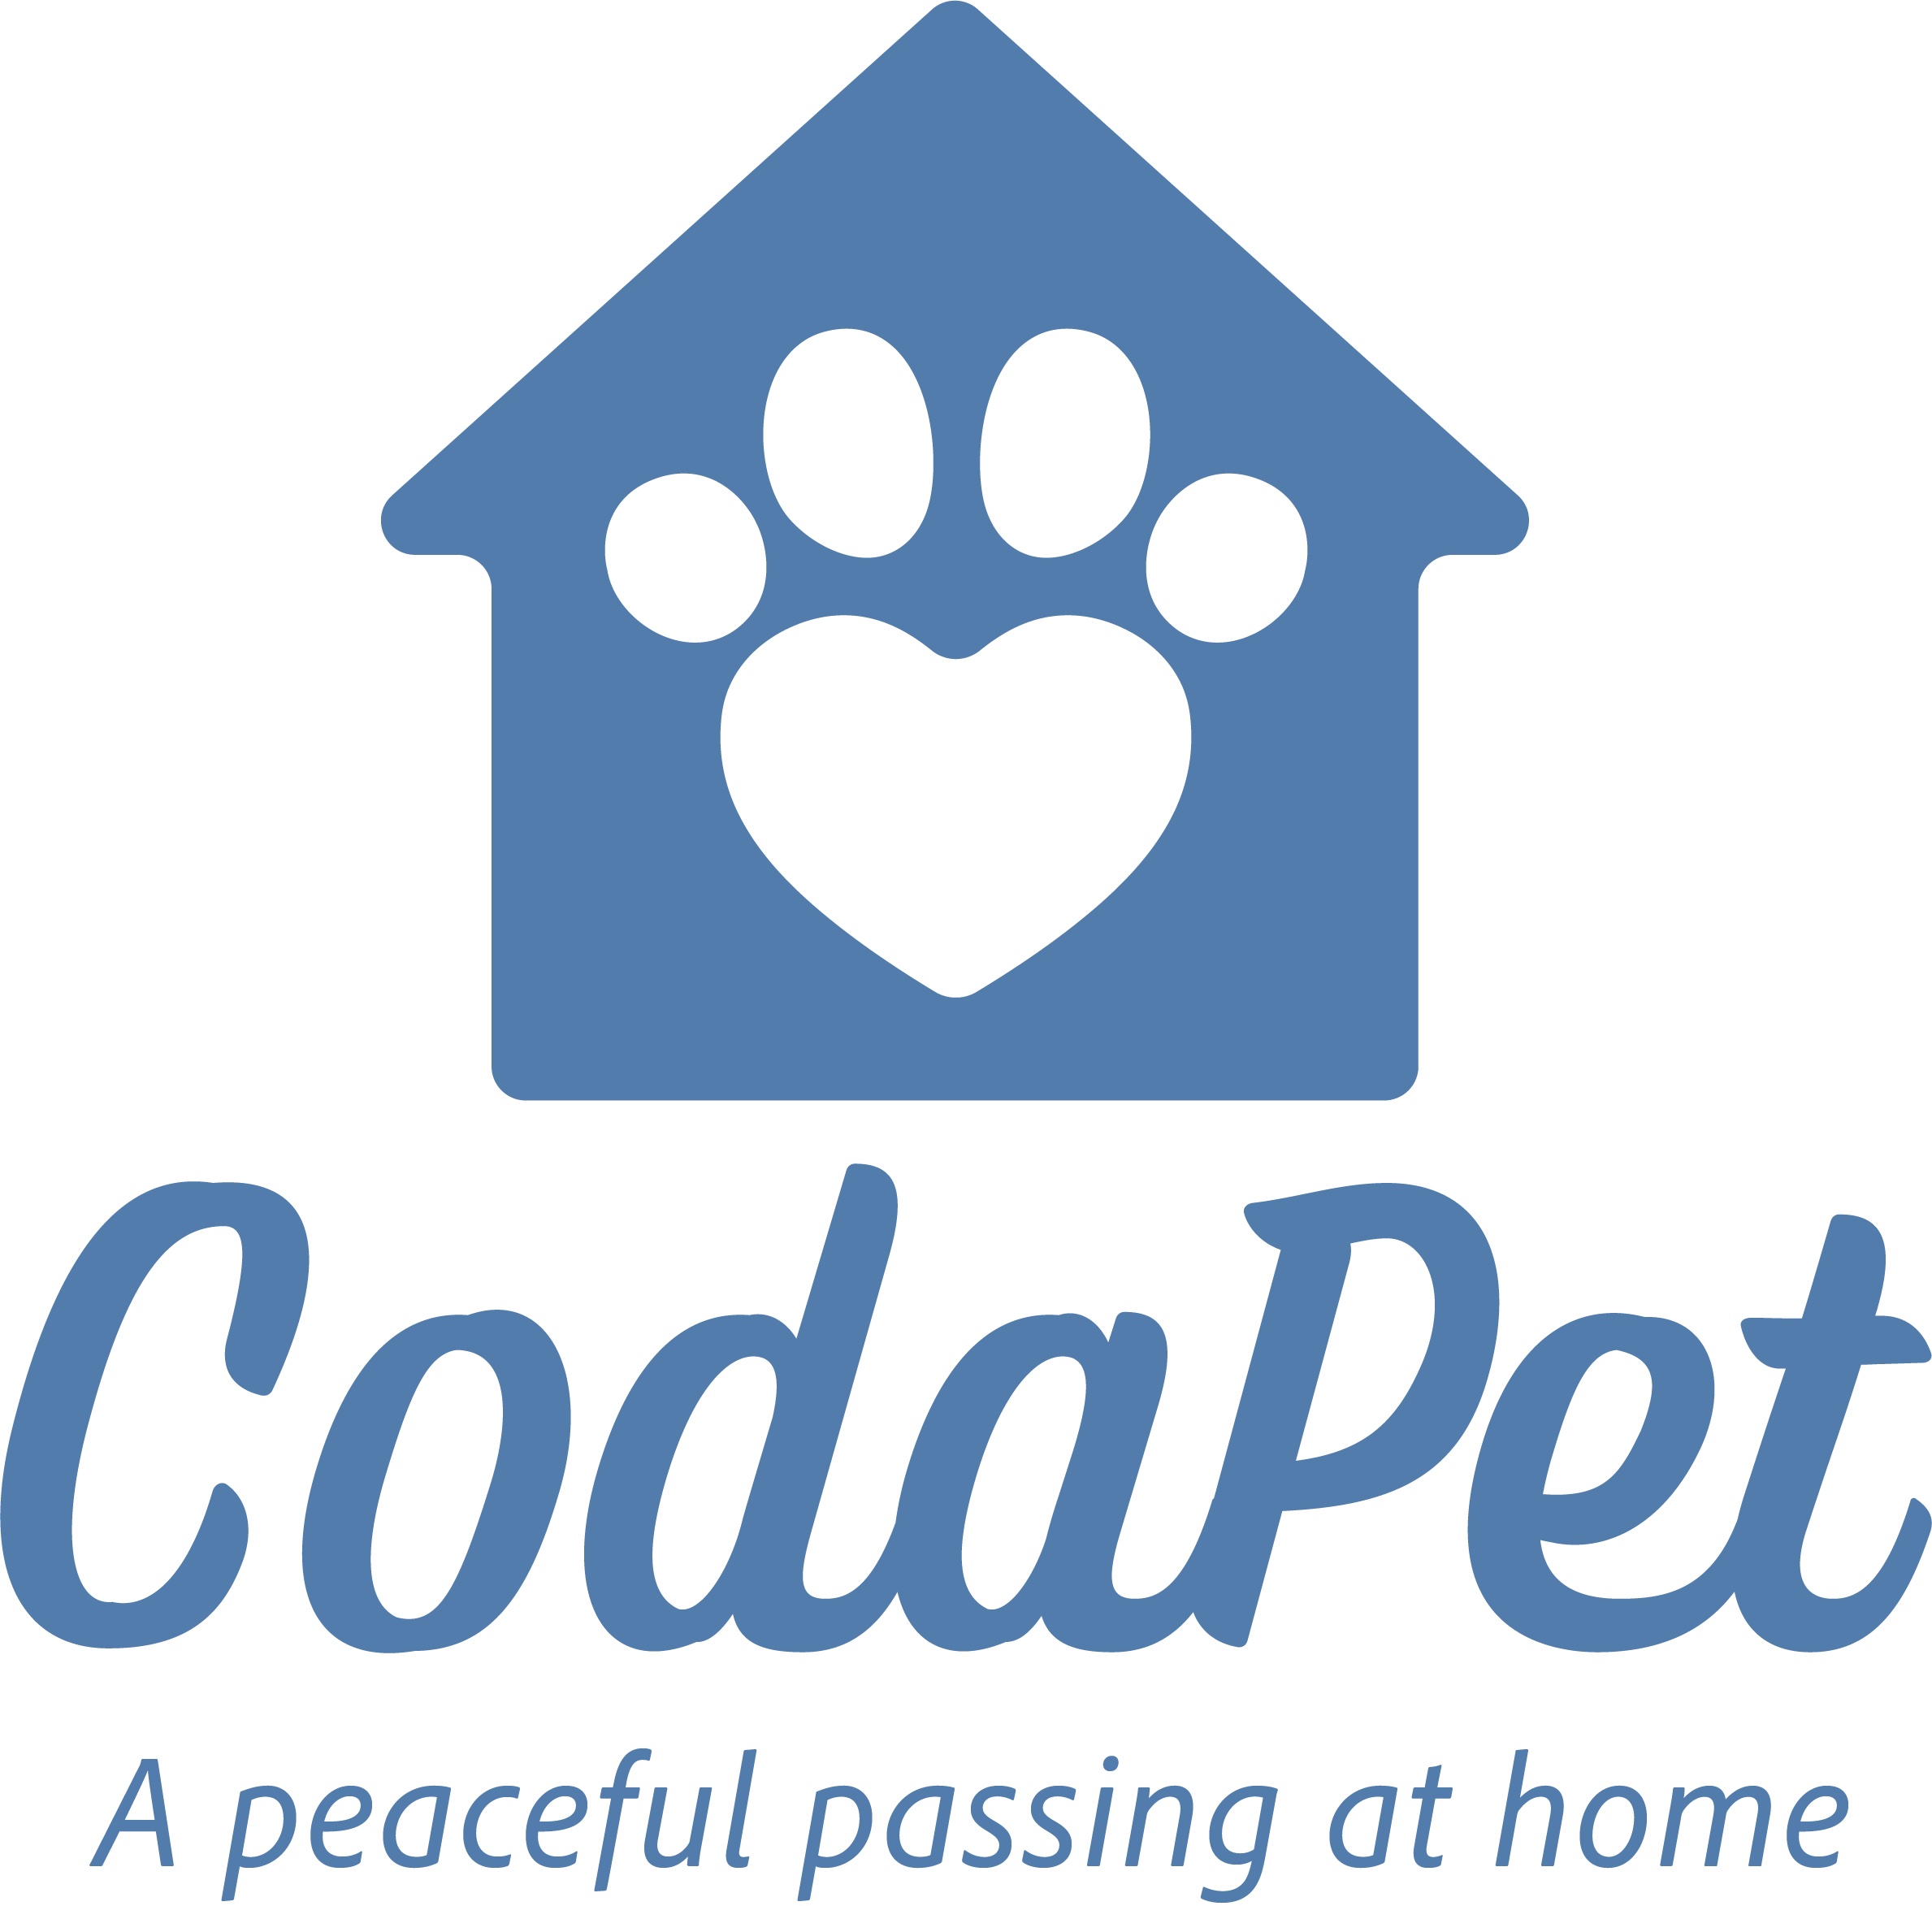 Company logo of CodaPet-At Home Pet Euthanasia